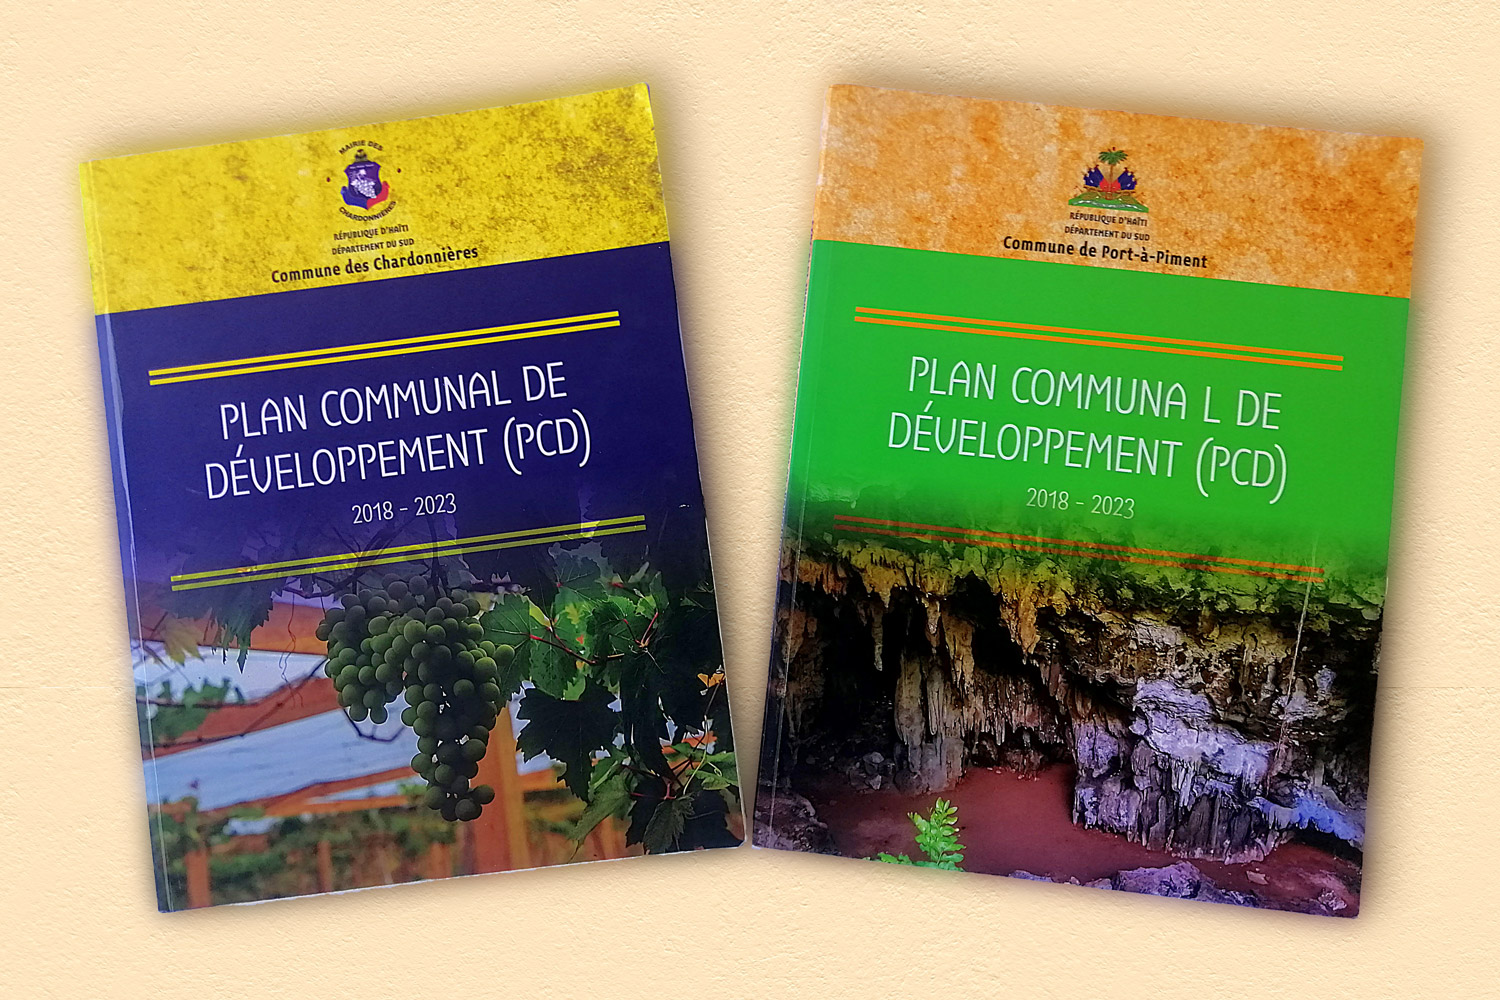 Le Plan communal de développement de Port-à-Piment et celui des Chardonnières publiés